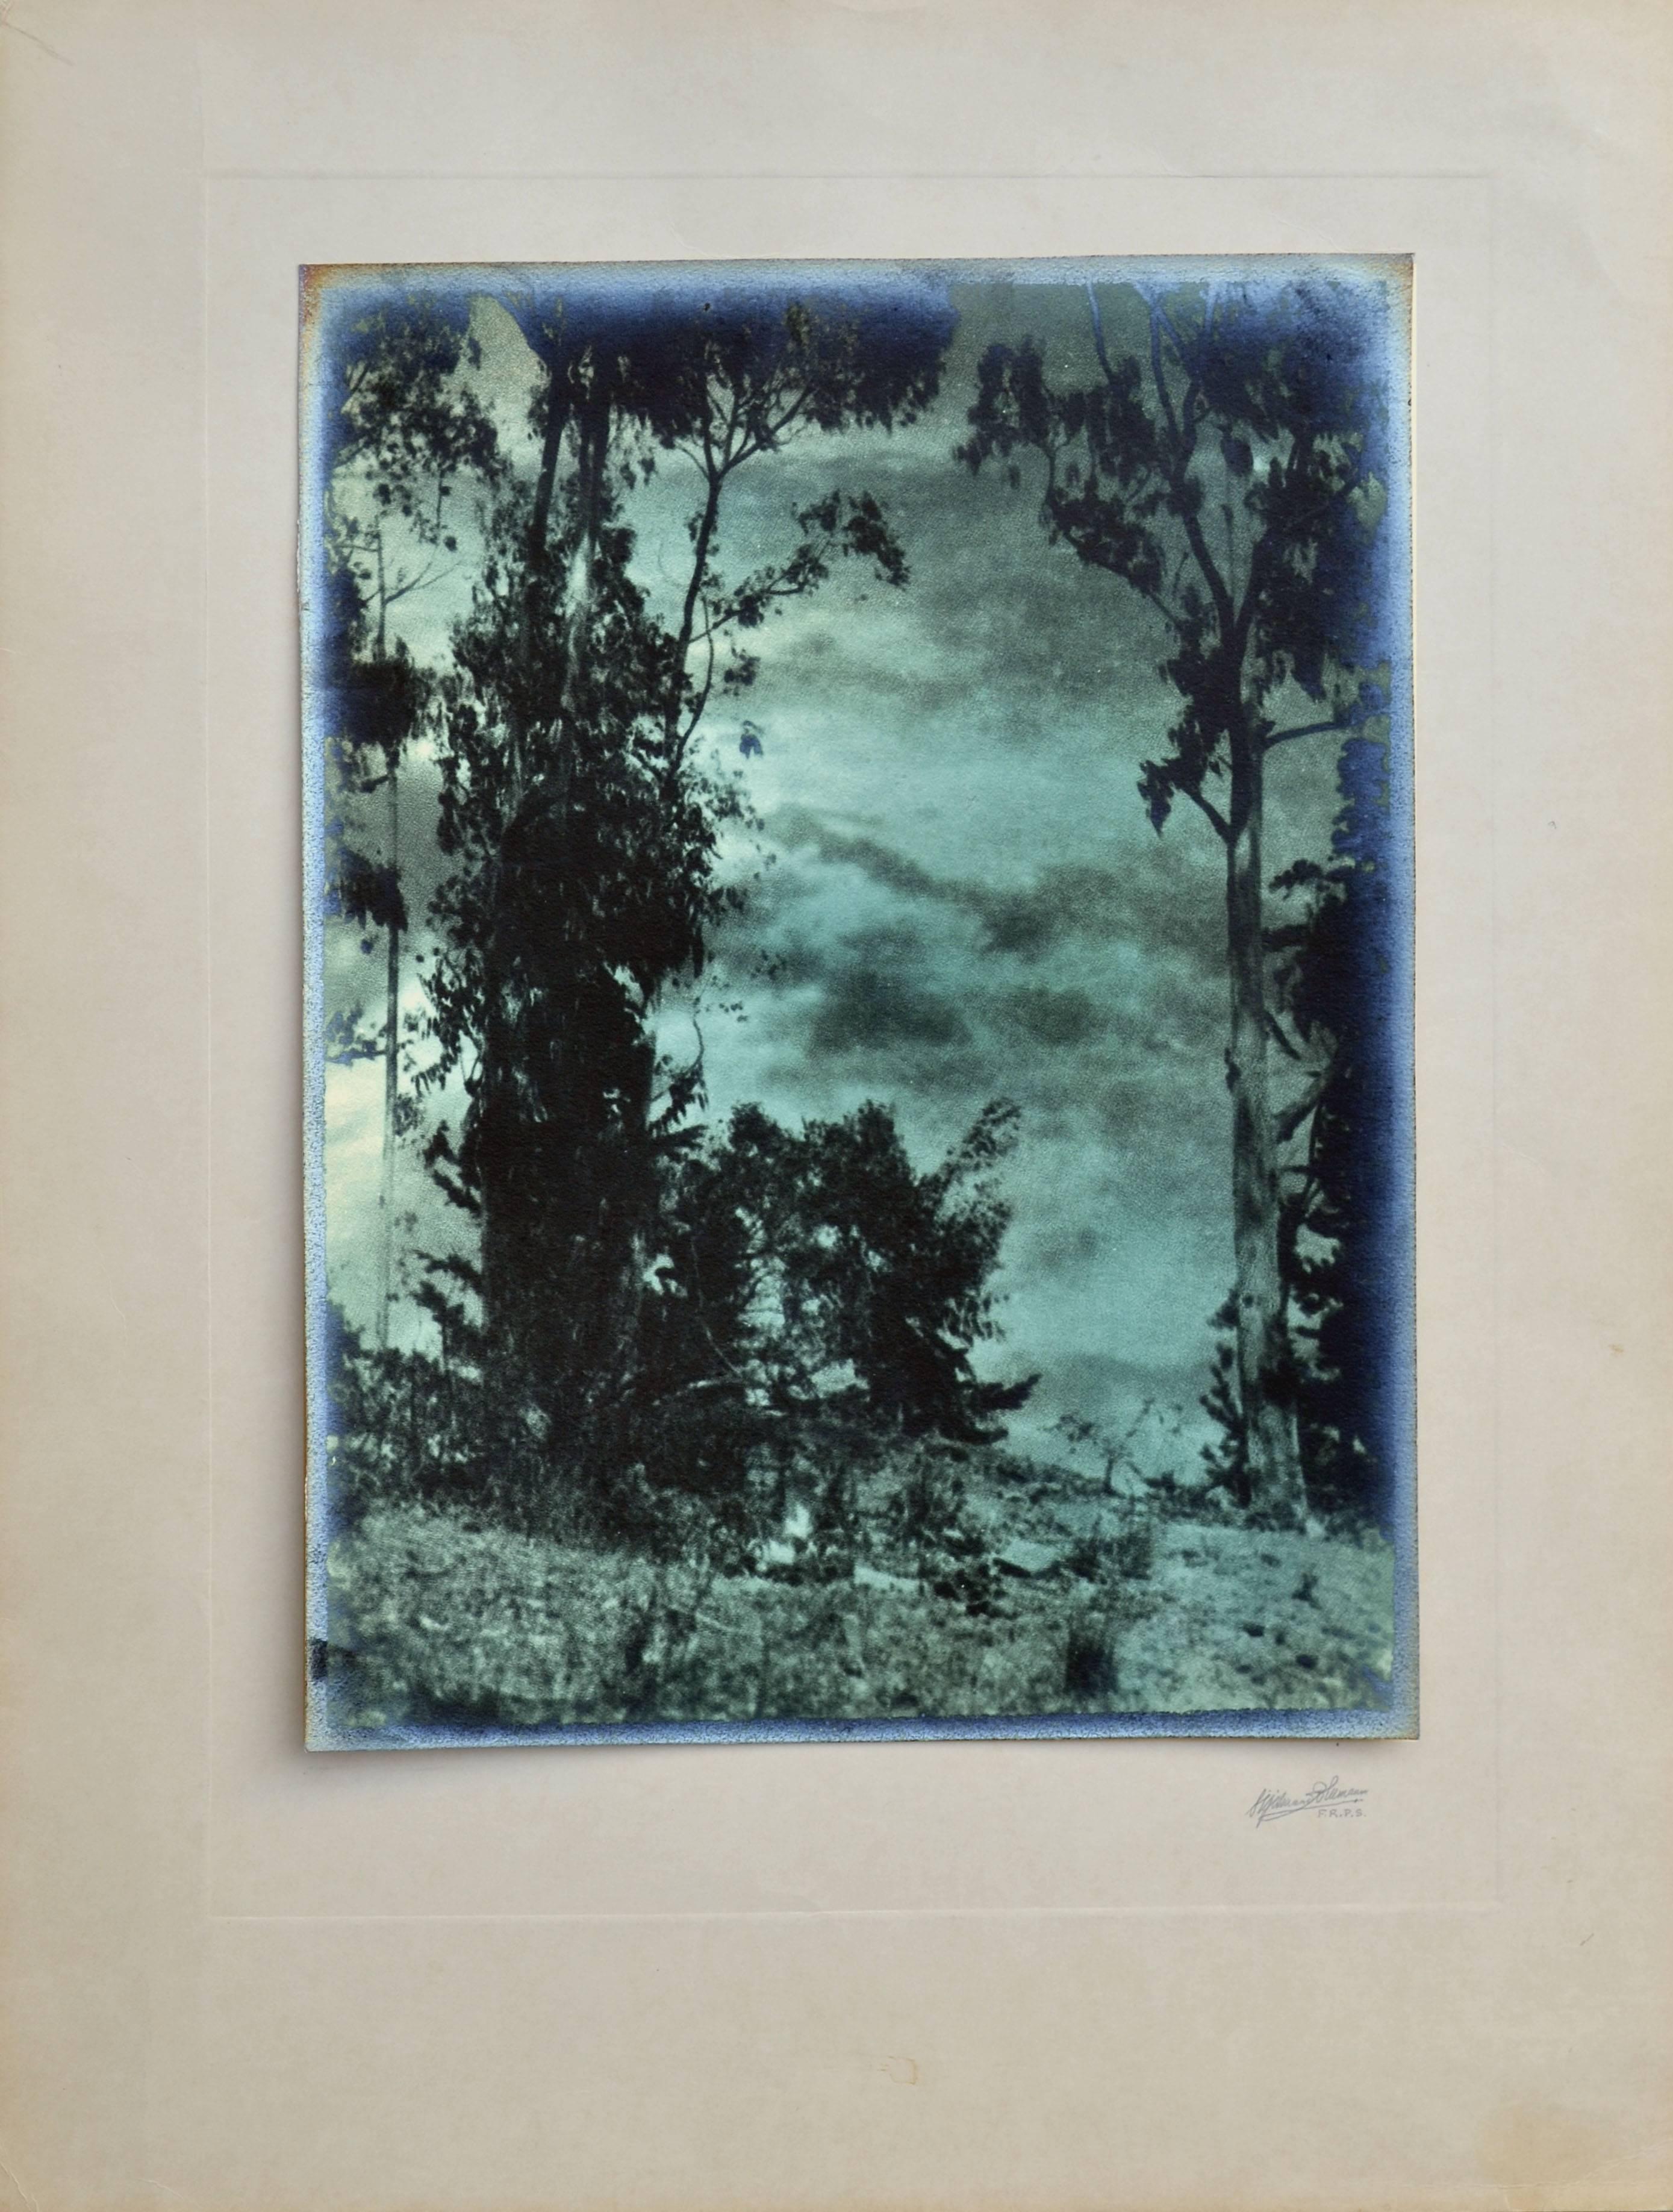 Sigismund Blumann Landscape Photograph – Fotografie Landschaft des frühen 20. Jahrhunderts – „Looking Through The Sky“